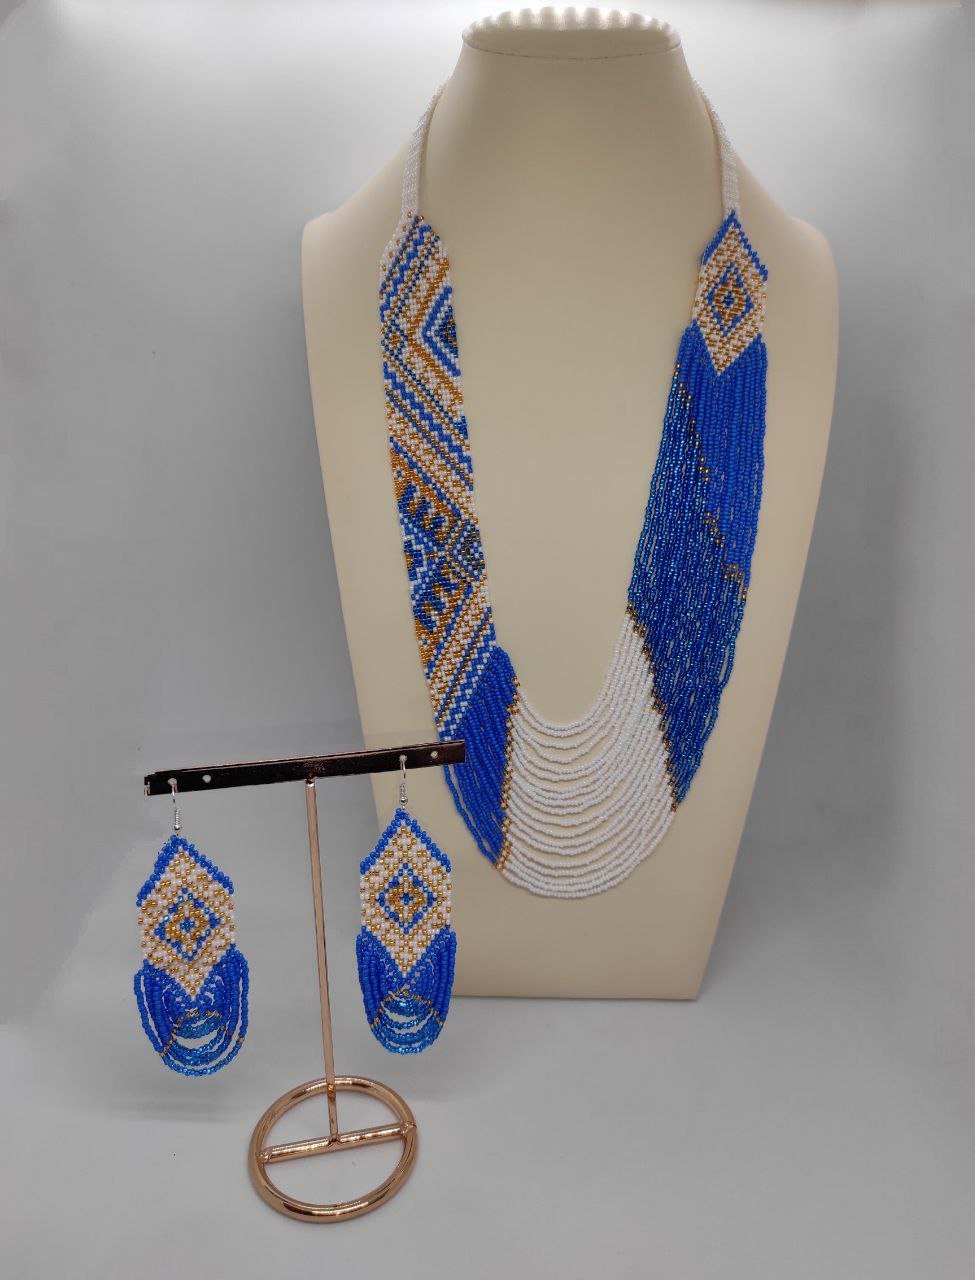 Гердан у біло-блакитних тонах “Водоспад” з традиційним орнаментом та низками бісеру